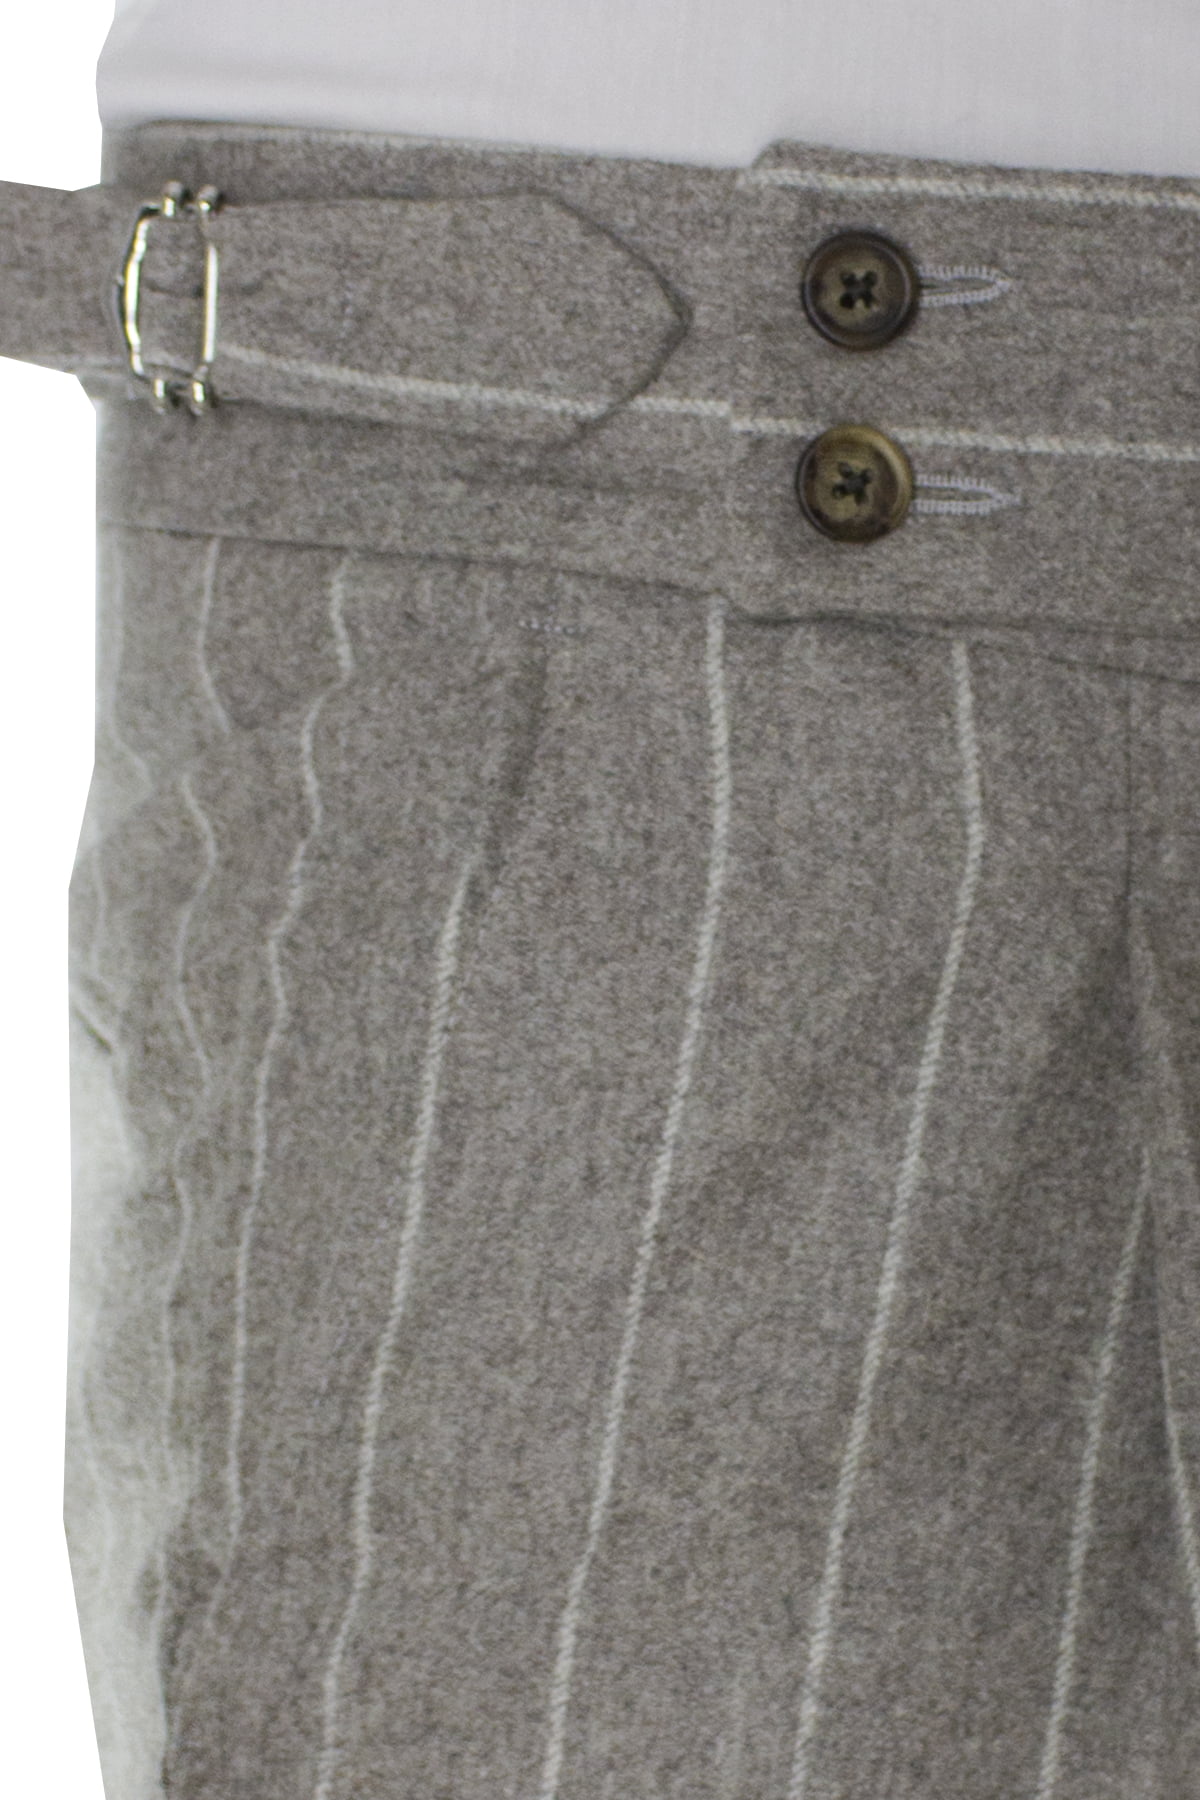 Pantalone uomo tortora gessato in lana vita alta con pinces e fibbie laterali vitale barberis canonico